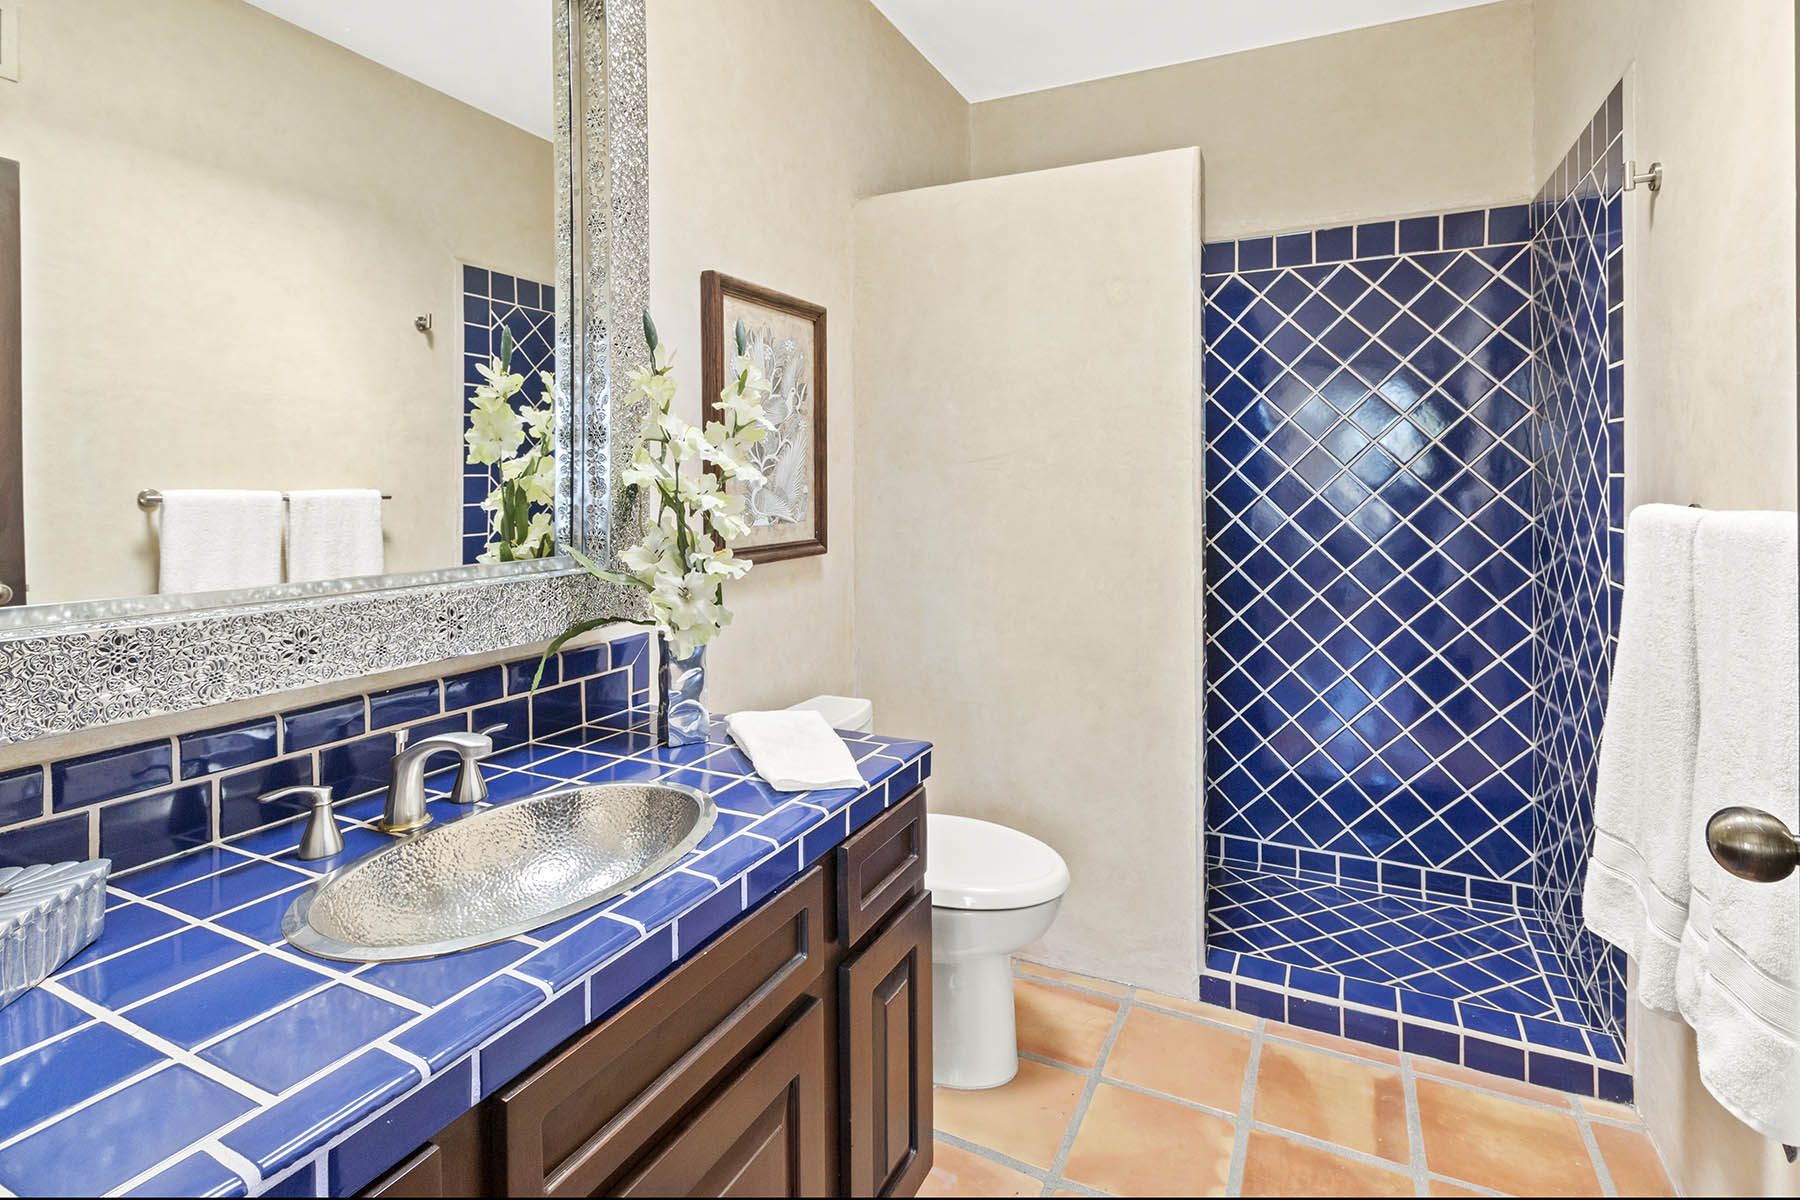 Casita Bathroom in a Vacation Rental in Cabo, San Lucas Mexico